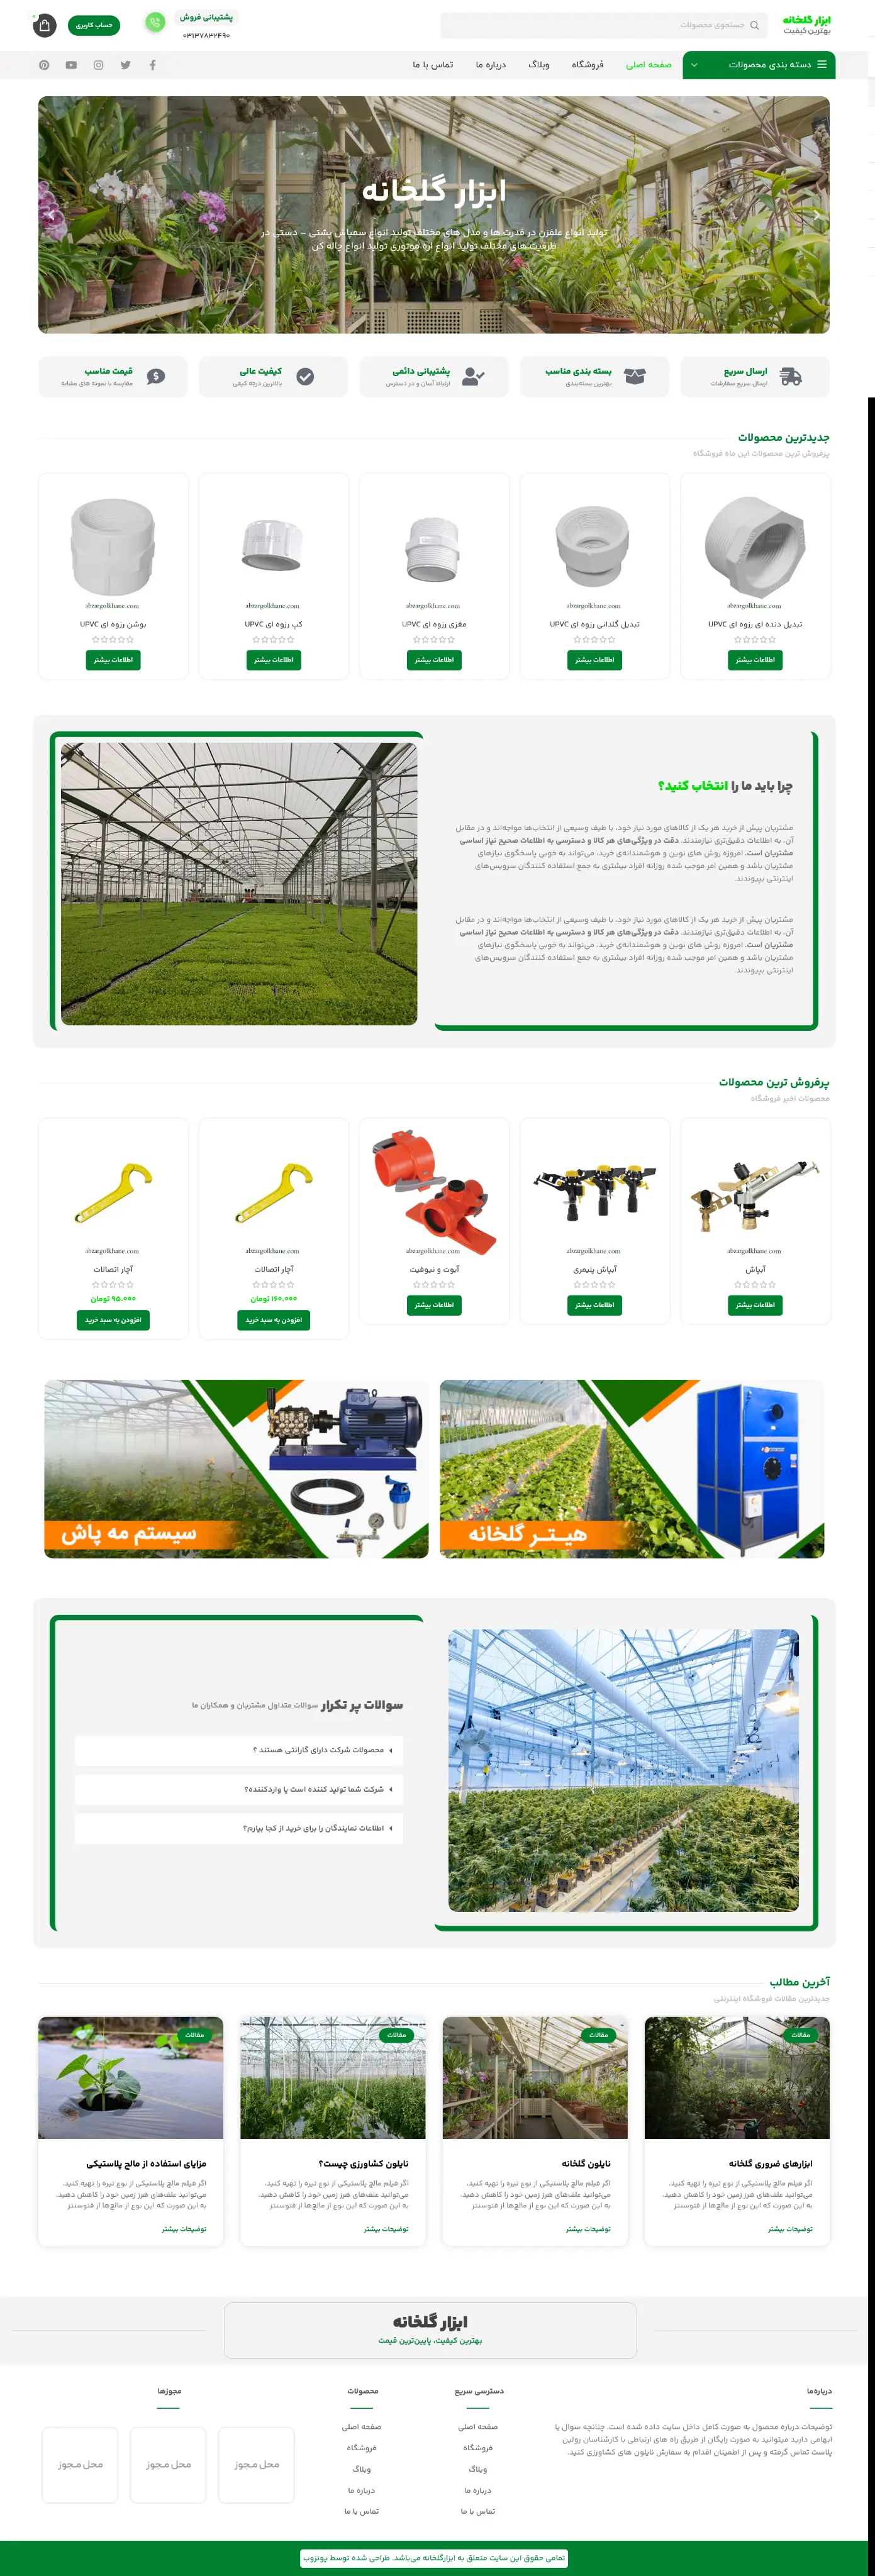 طراحی و اجرای سایت فروشگاهی ابزار گلخانه